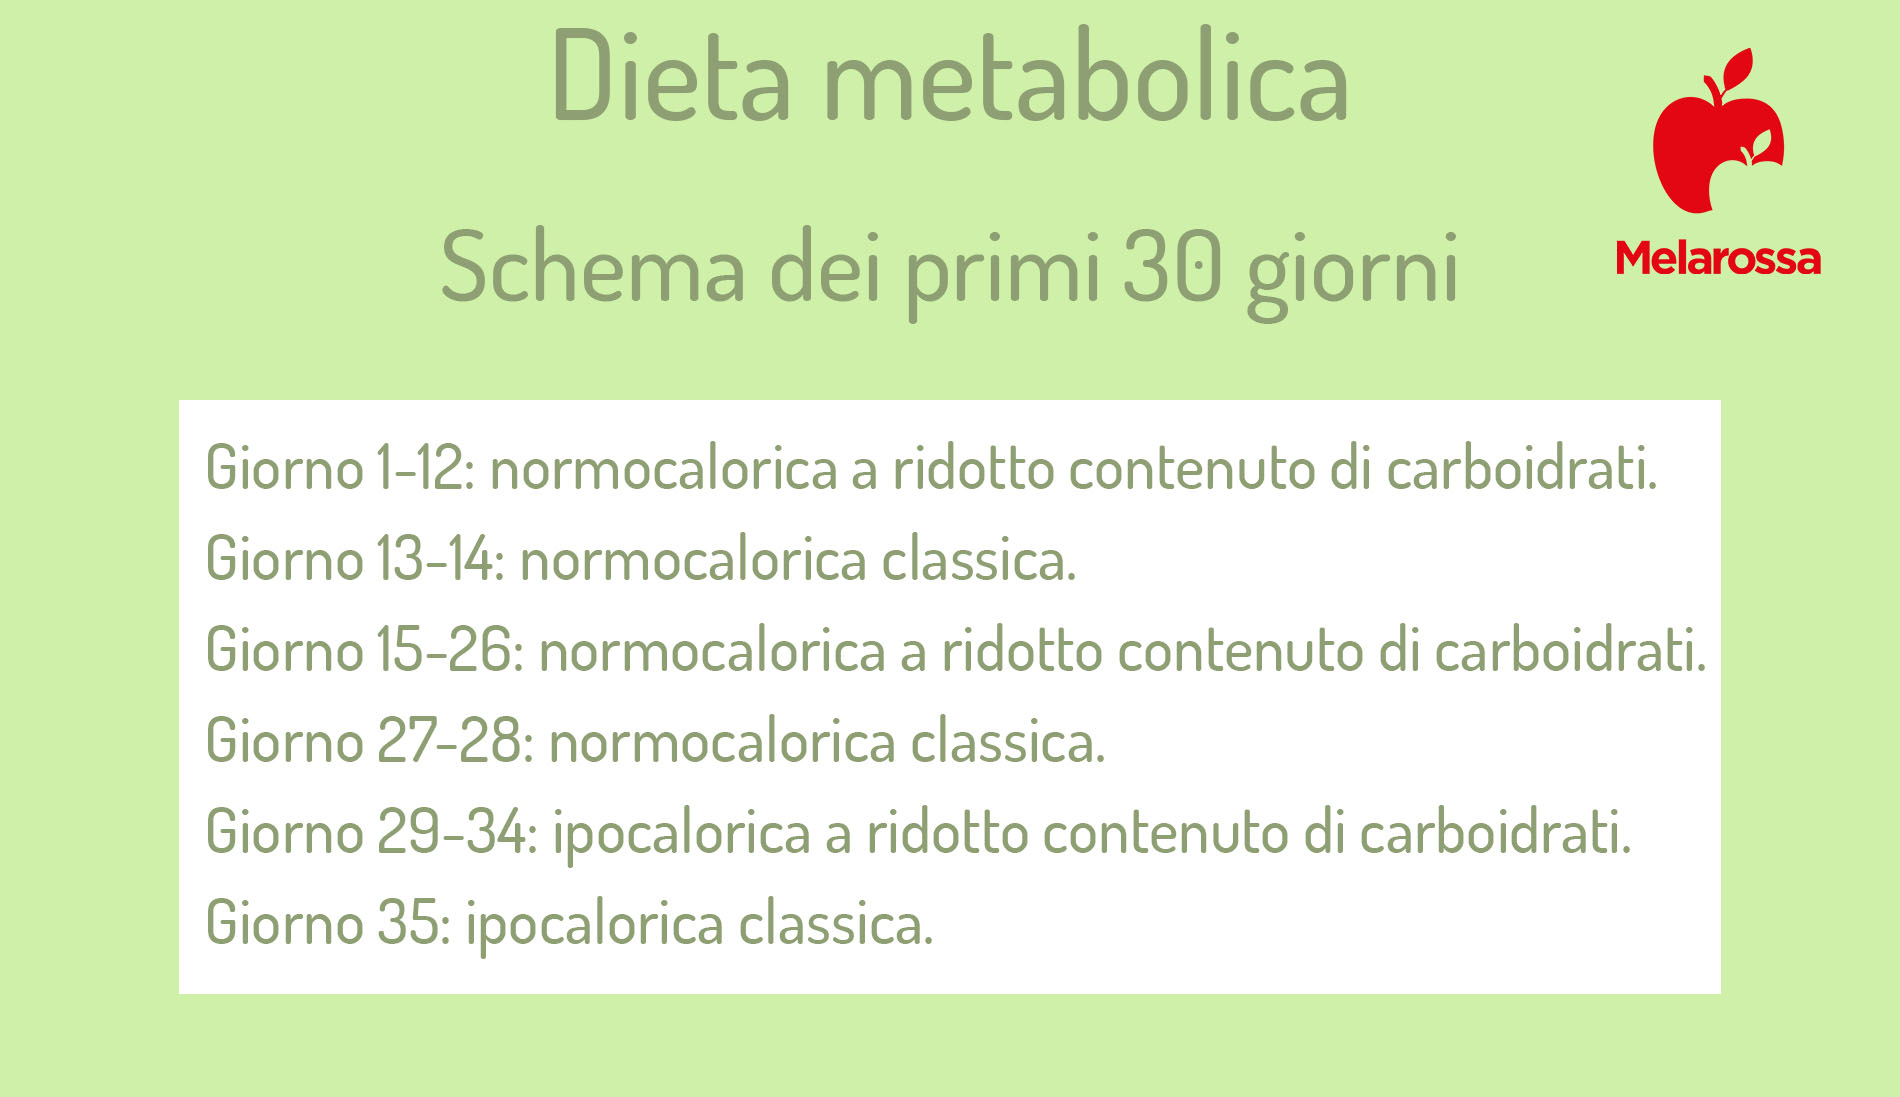 dieta metabolica: i primi 30 giorni 